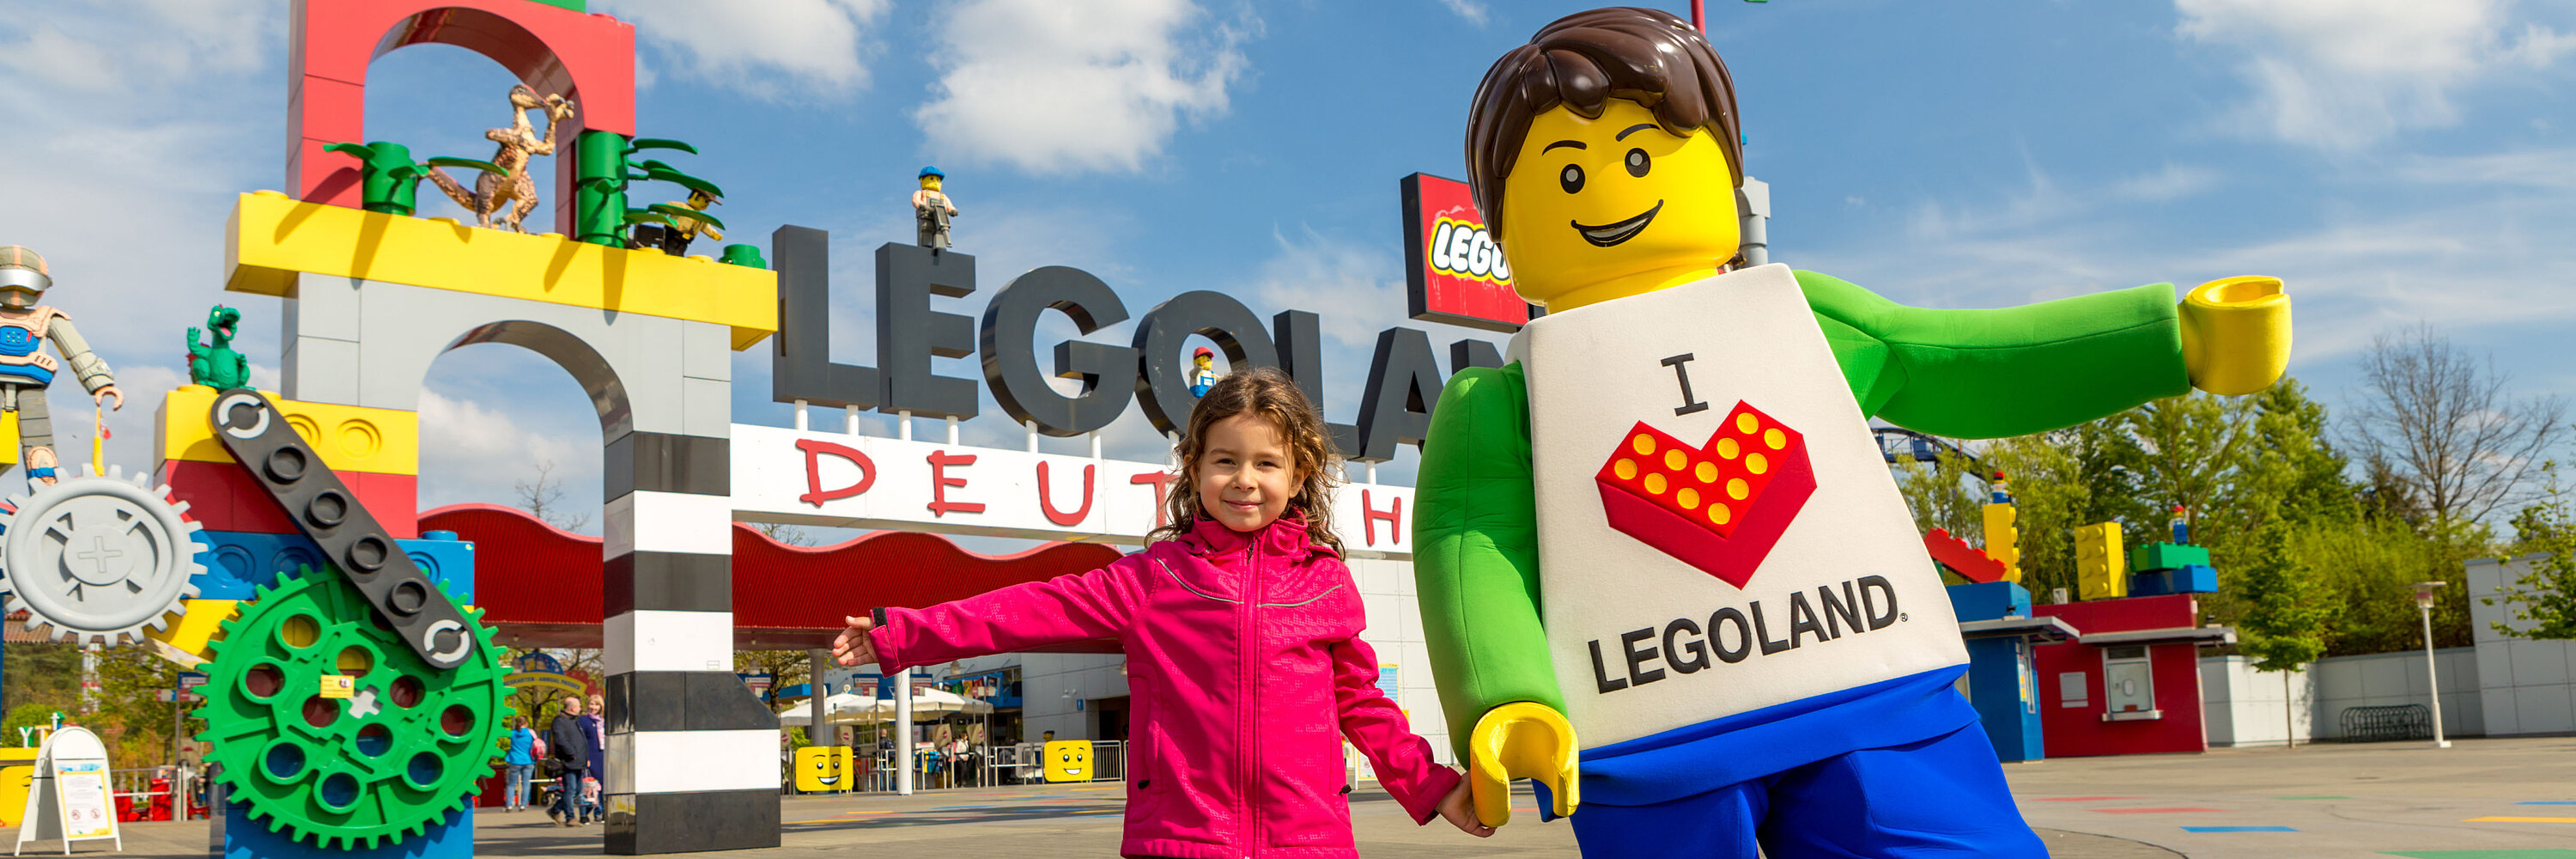 Gruppentickets Legoland. Foto: Philipp Röger für die Stadt Günzburg